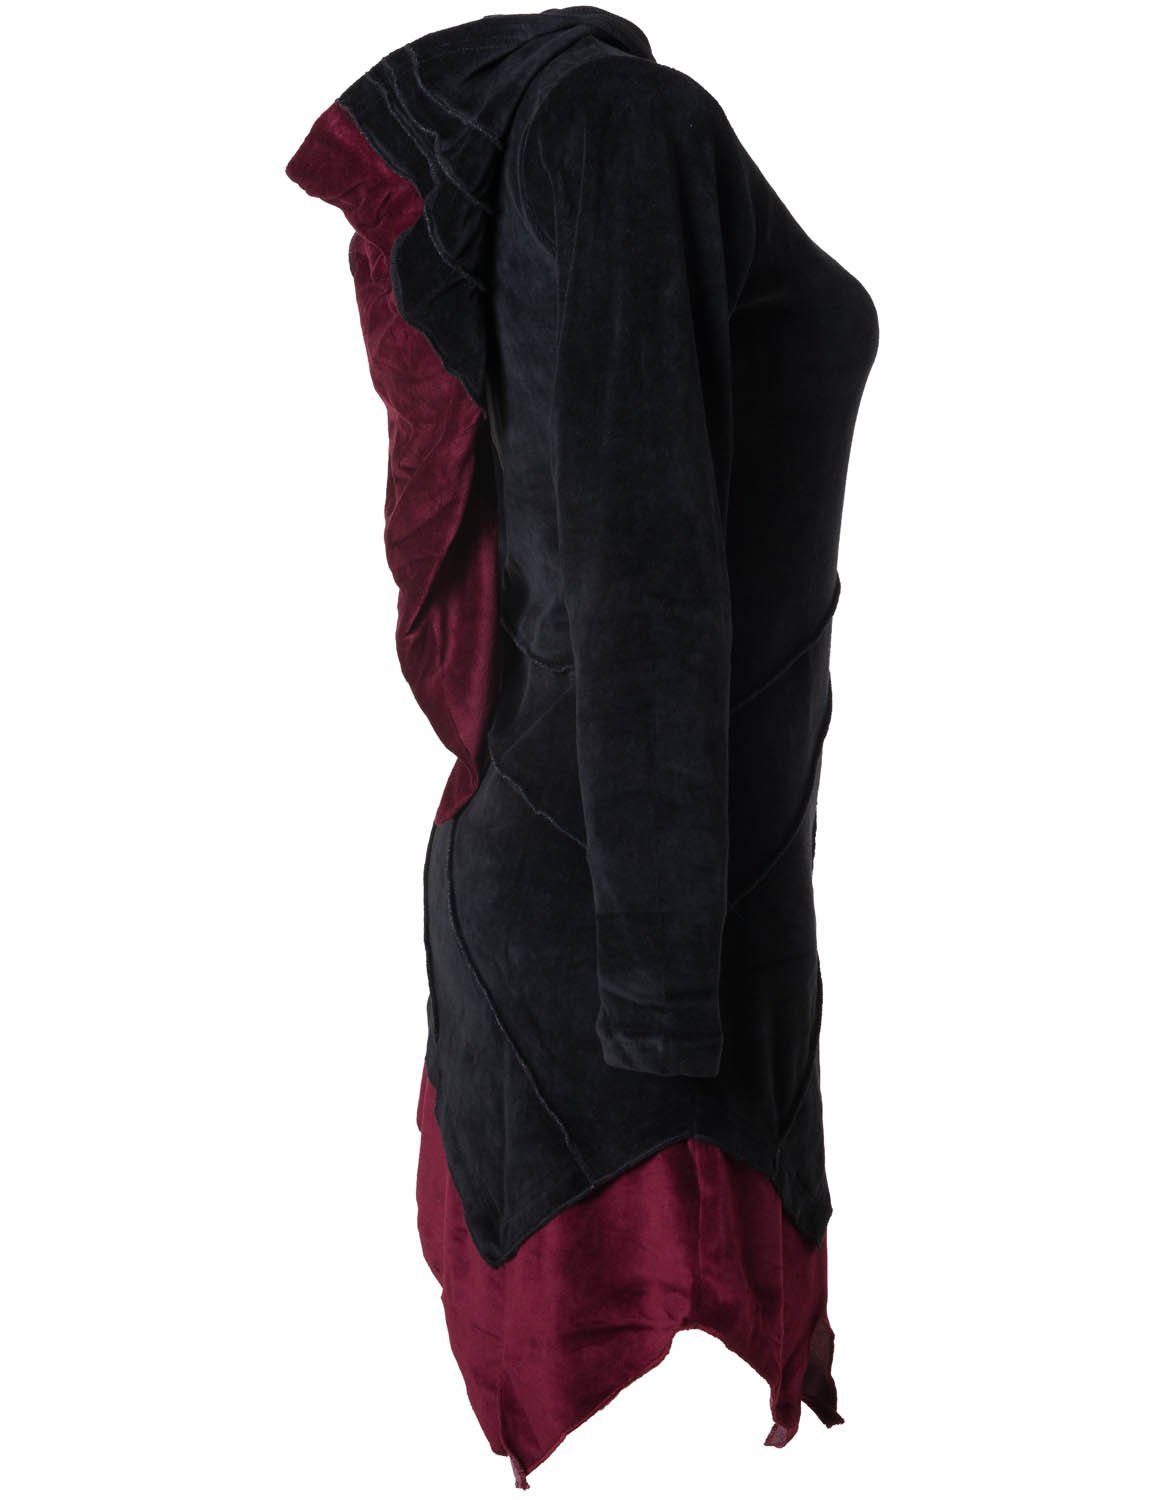 m. Vishes Ethno Zipfelkleid schwarz Gothik, Elfenkleid Hippie, Zipfelkapuze Style Asymmetrisches aus Samt